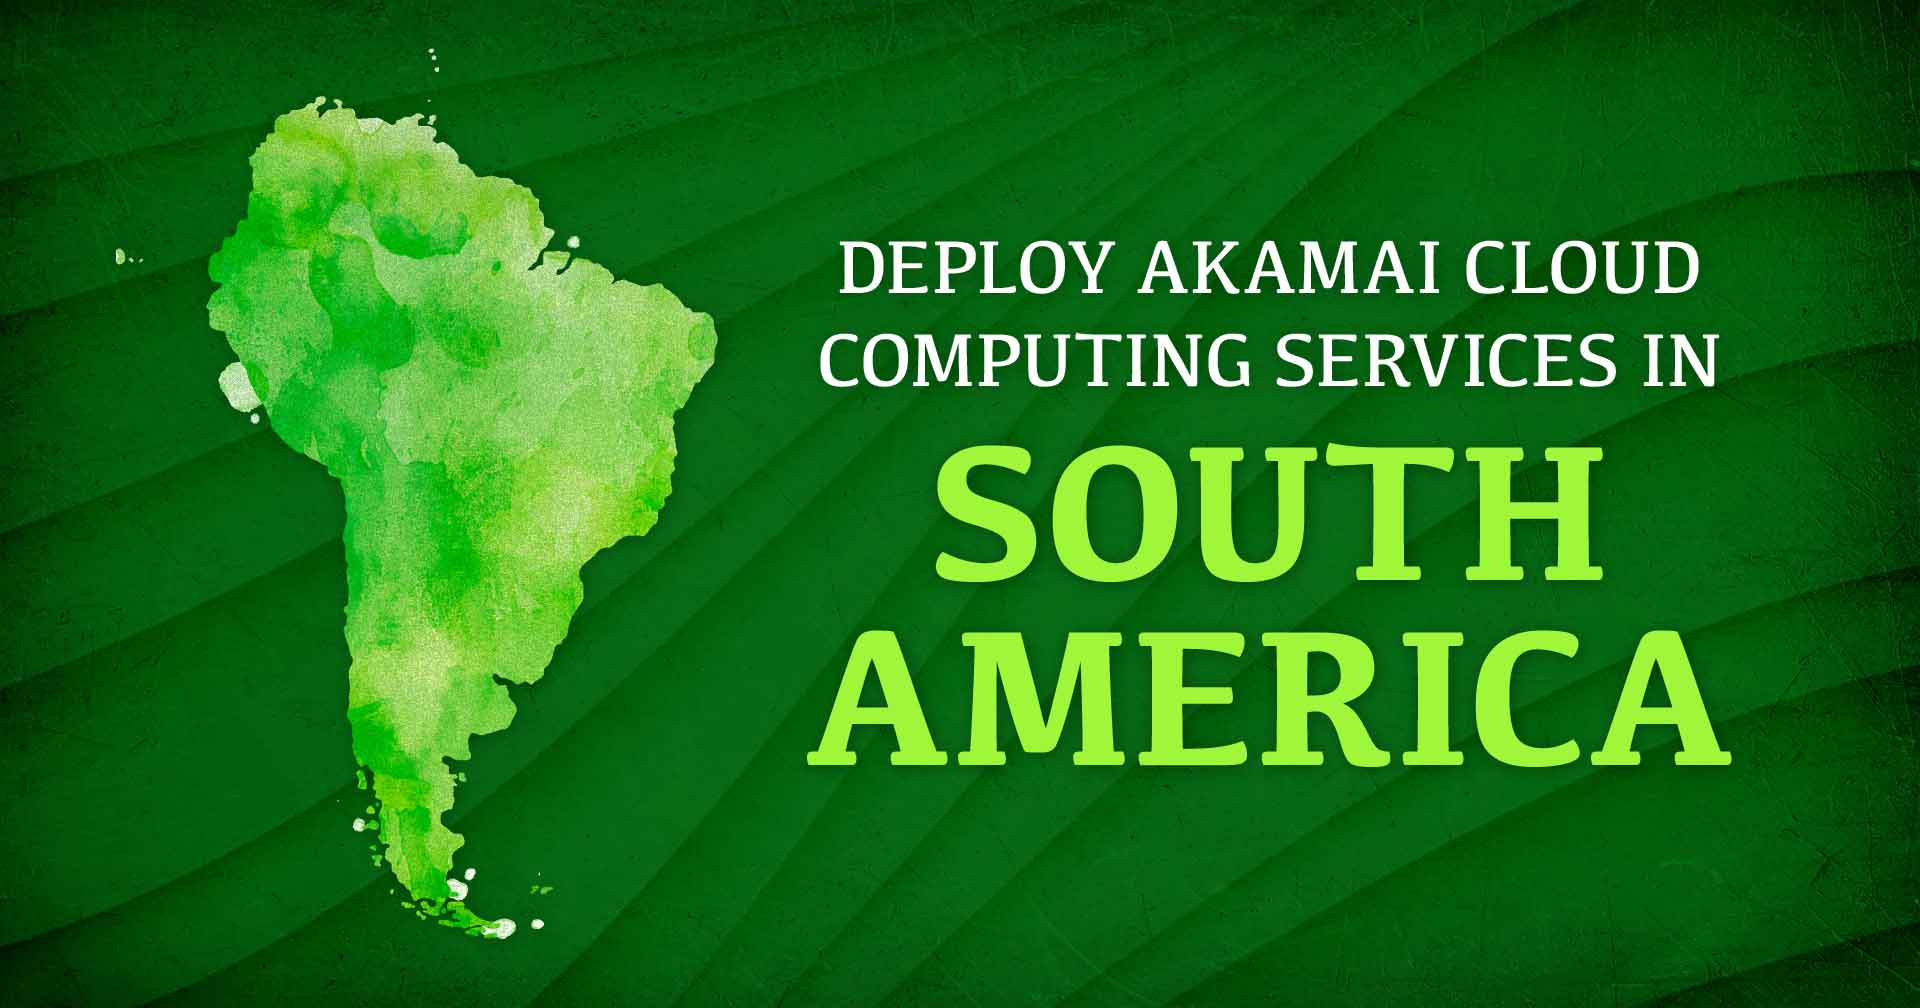 Représentation graphique de l'Amérique du Sud à côté du texte Déployer les services de Cloud Computing d'Akamai en Amérique du Sud.